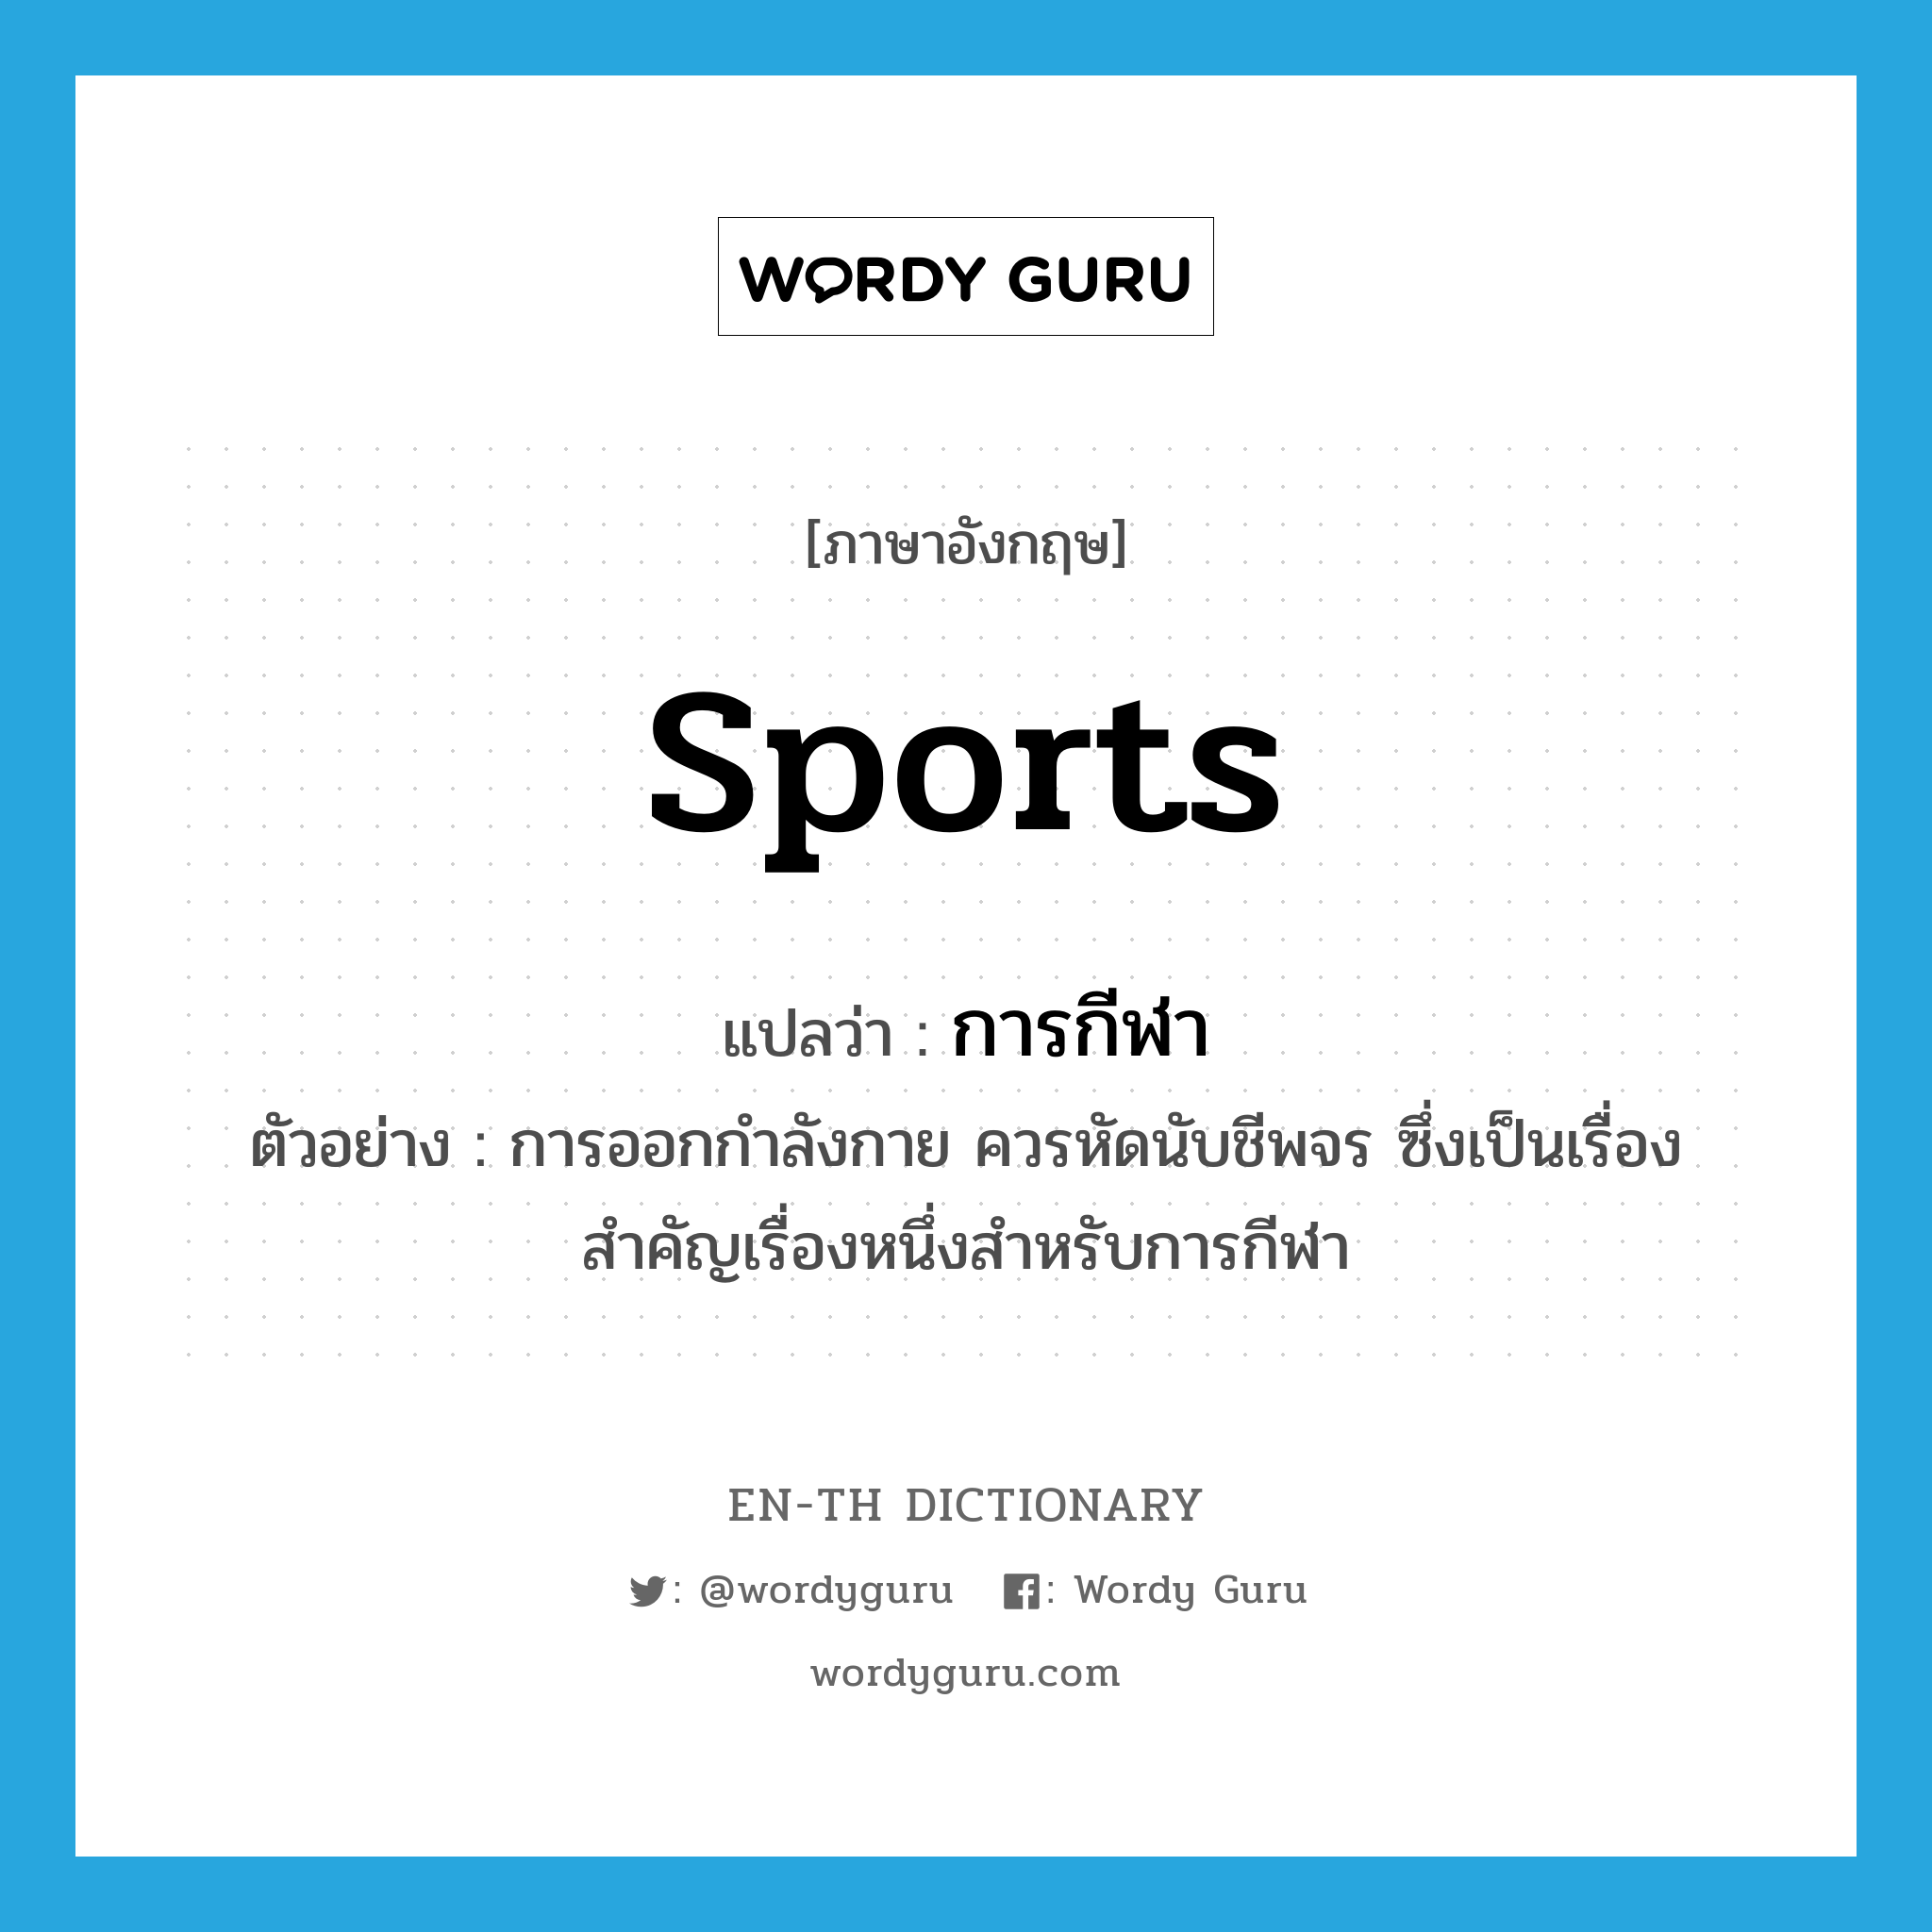 sports แปลว่า?, คำศัพท์ภาษาอังกฤษ sports แปลว่า การกีฬา ประเภท N ตัวอย่าง การออกกำลังกาย ควรหัดนับชีพจร ซึ่งเป็นเรื่องสำคัญเรื่องหนึ่งสำหรับการกีฬา หมวด N